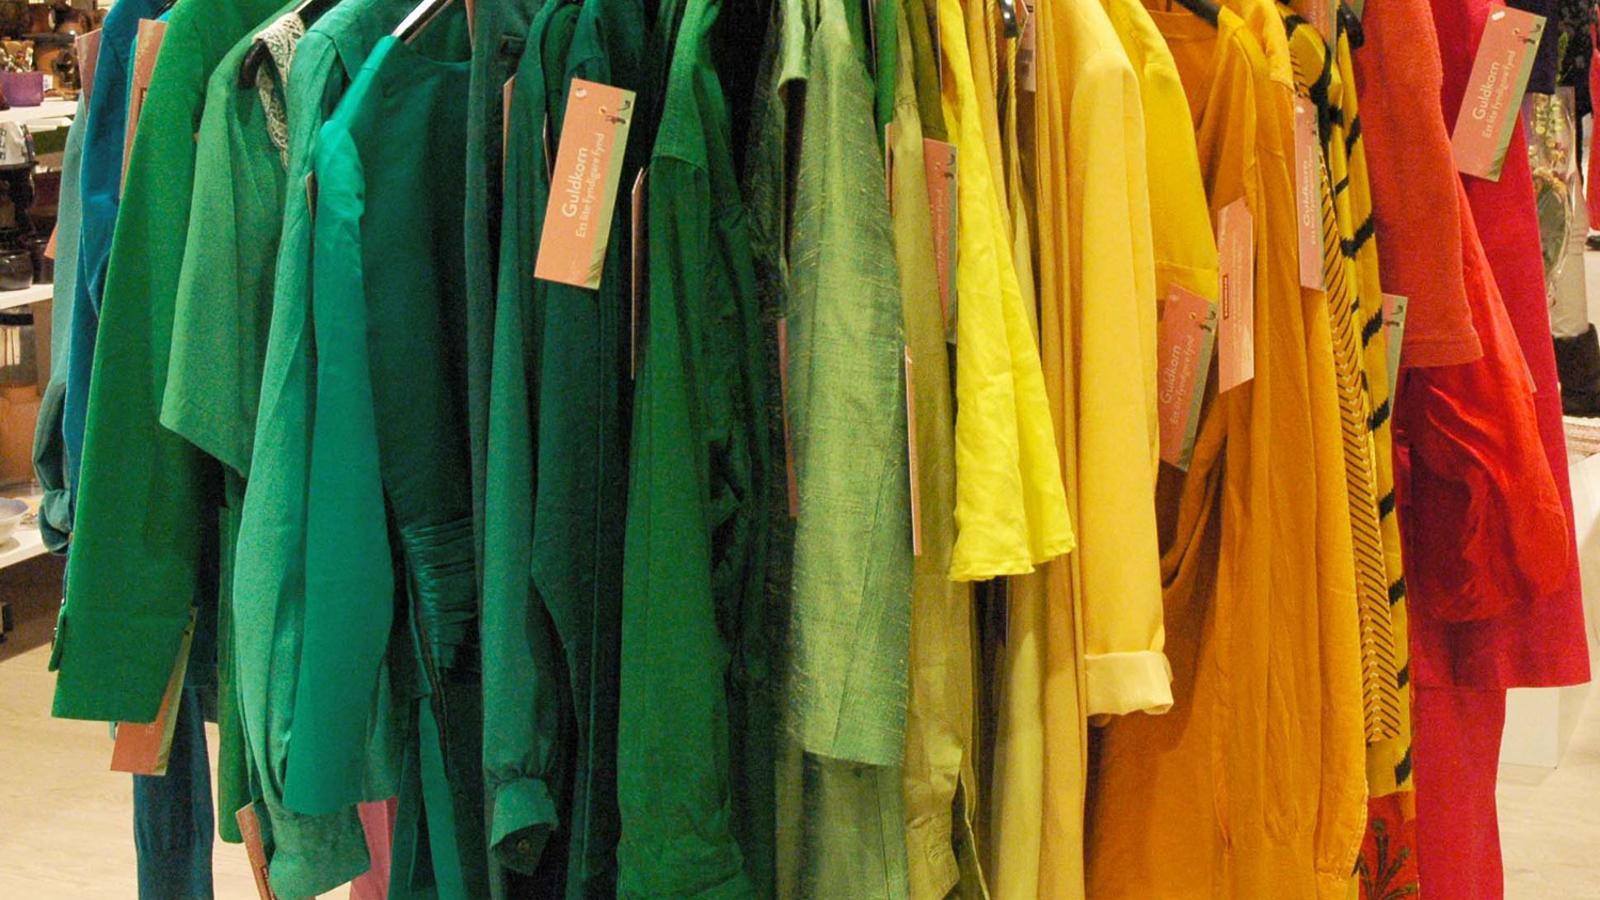 Röda, orangea, gula och gröna kläder som hänger på galgar.